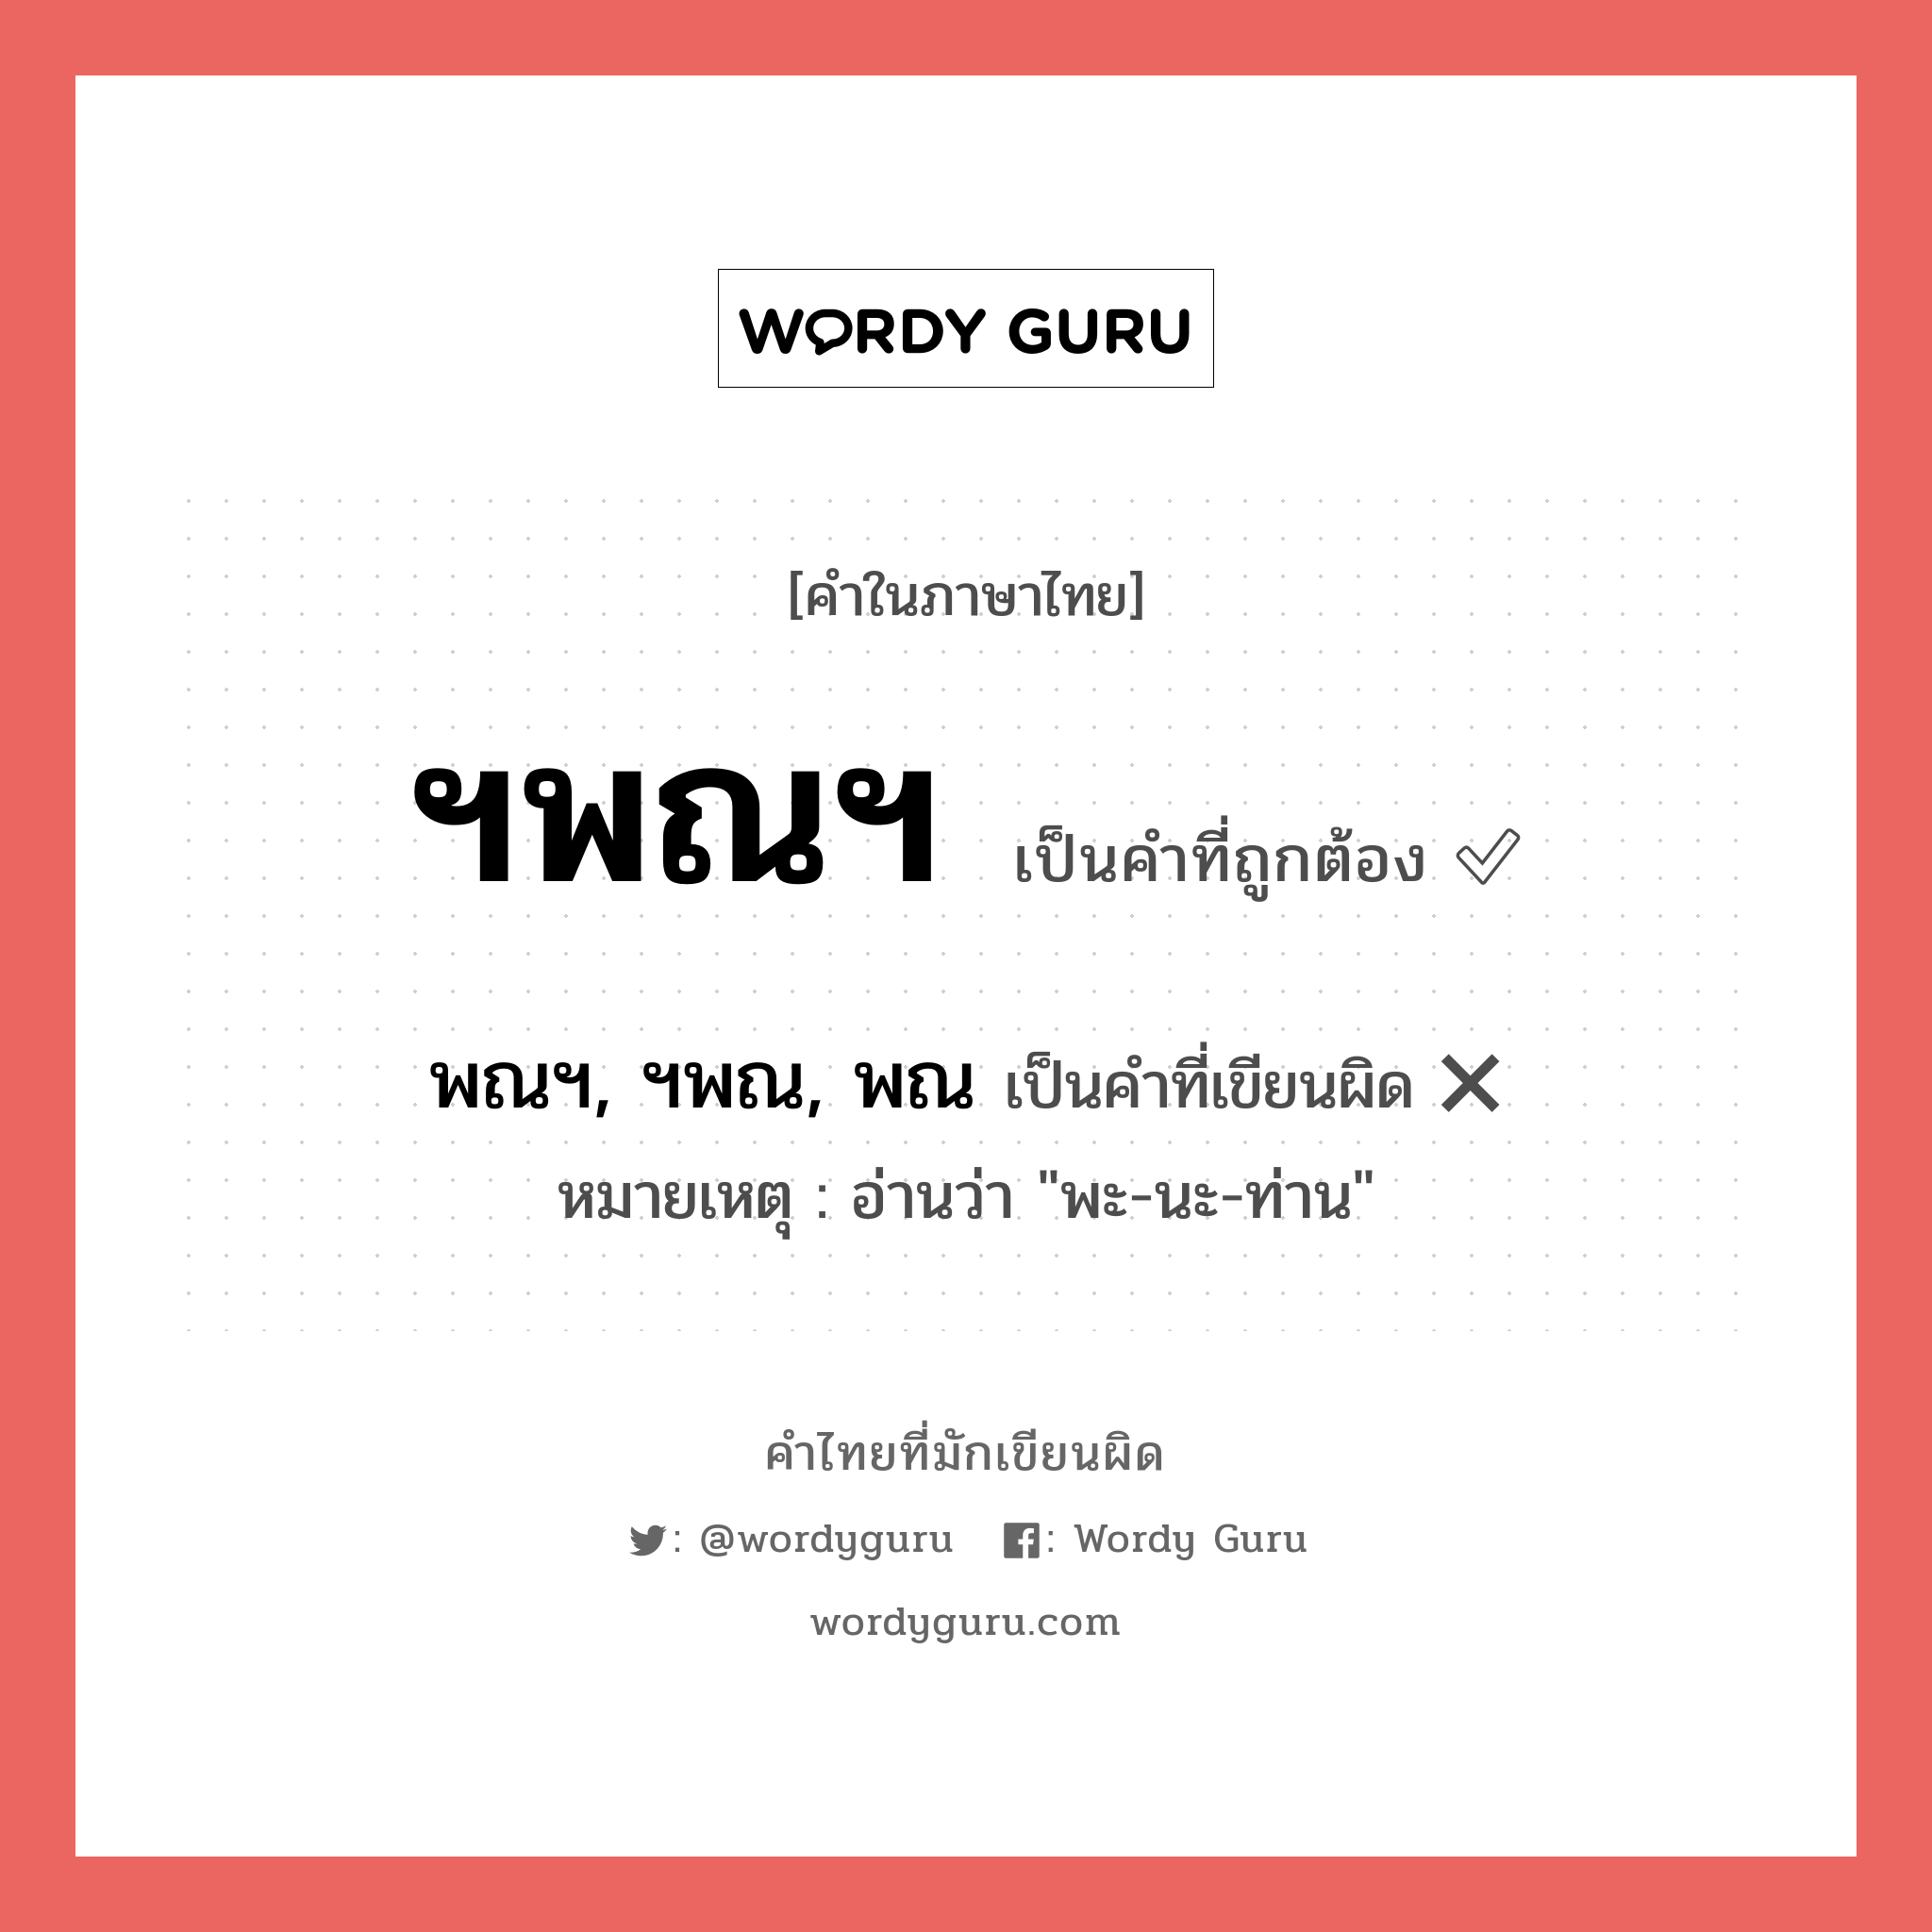 พณฯ, ฯพณ, พณ หรือ ฯพณฯ คำไหนเขียนถูก?, คำในภาษาไทยที่มักเขียนผิด พณฯ, ฯพณ, พณ คำที่ผิด ❌ ฯพณฯ หมายเหตุ อ่านว่า "พะ-นะ-ท่าน"